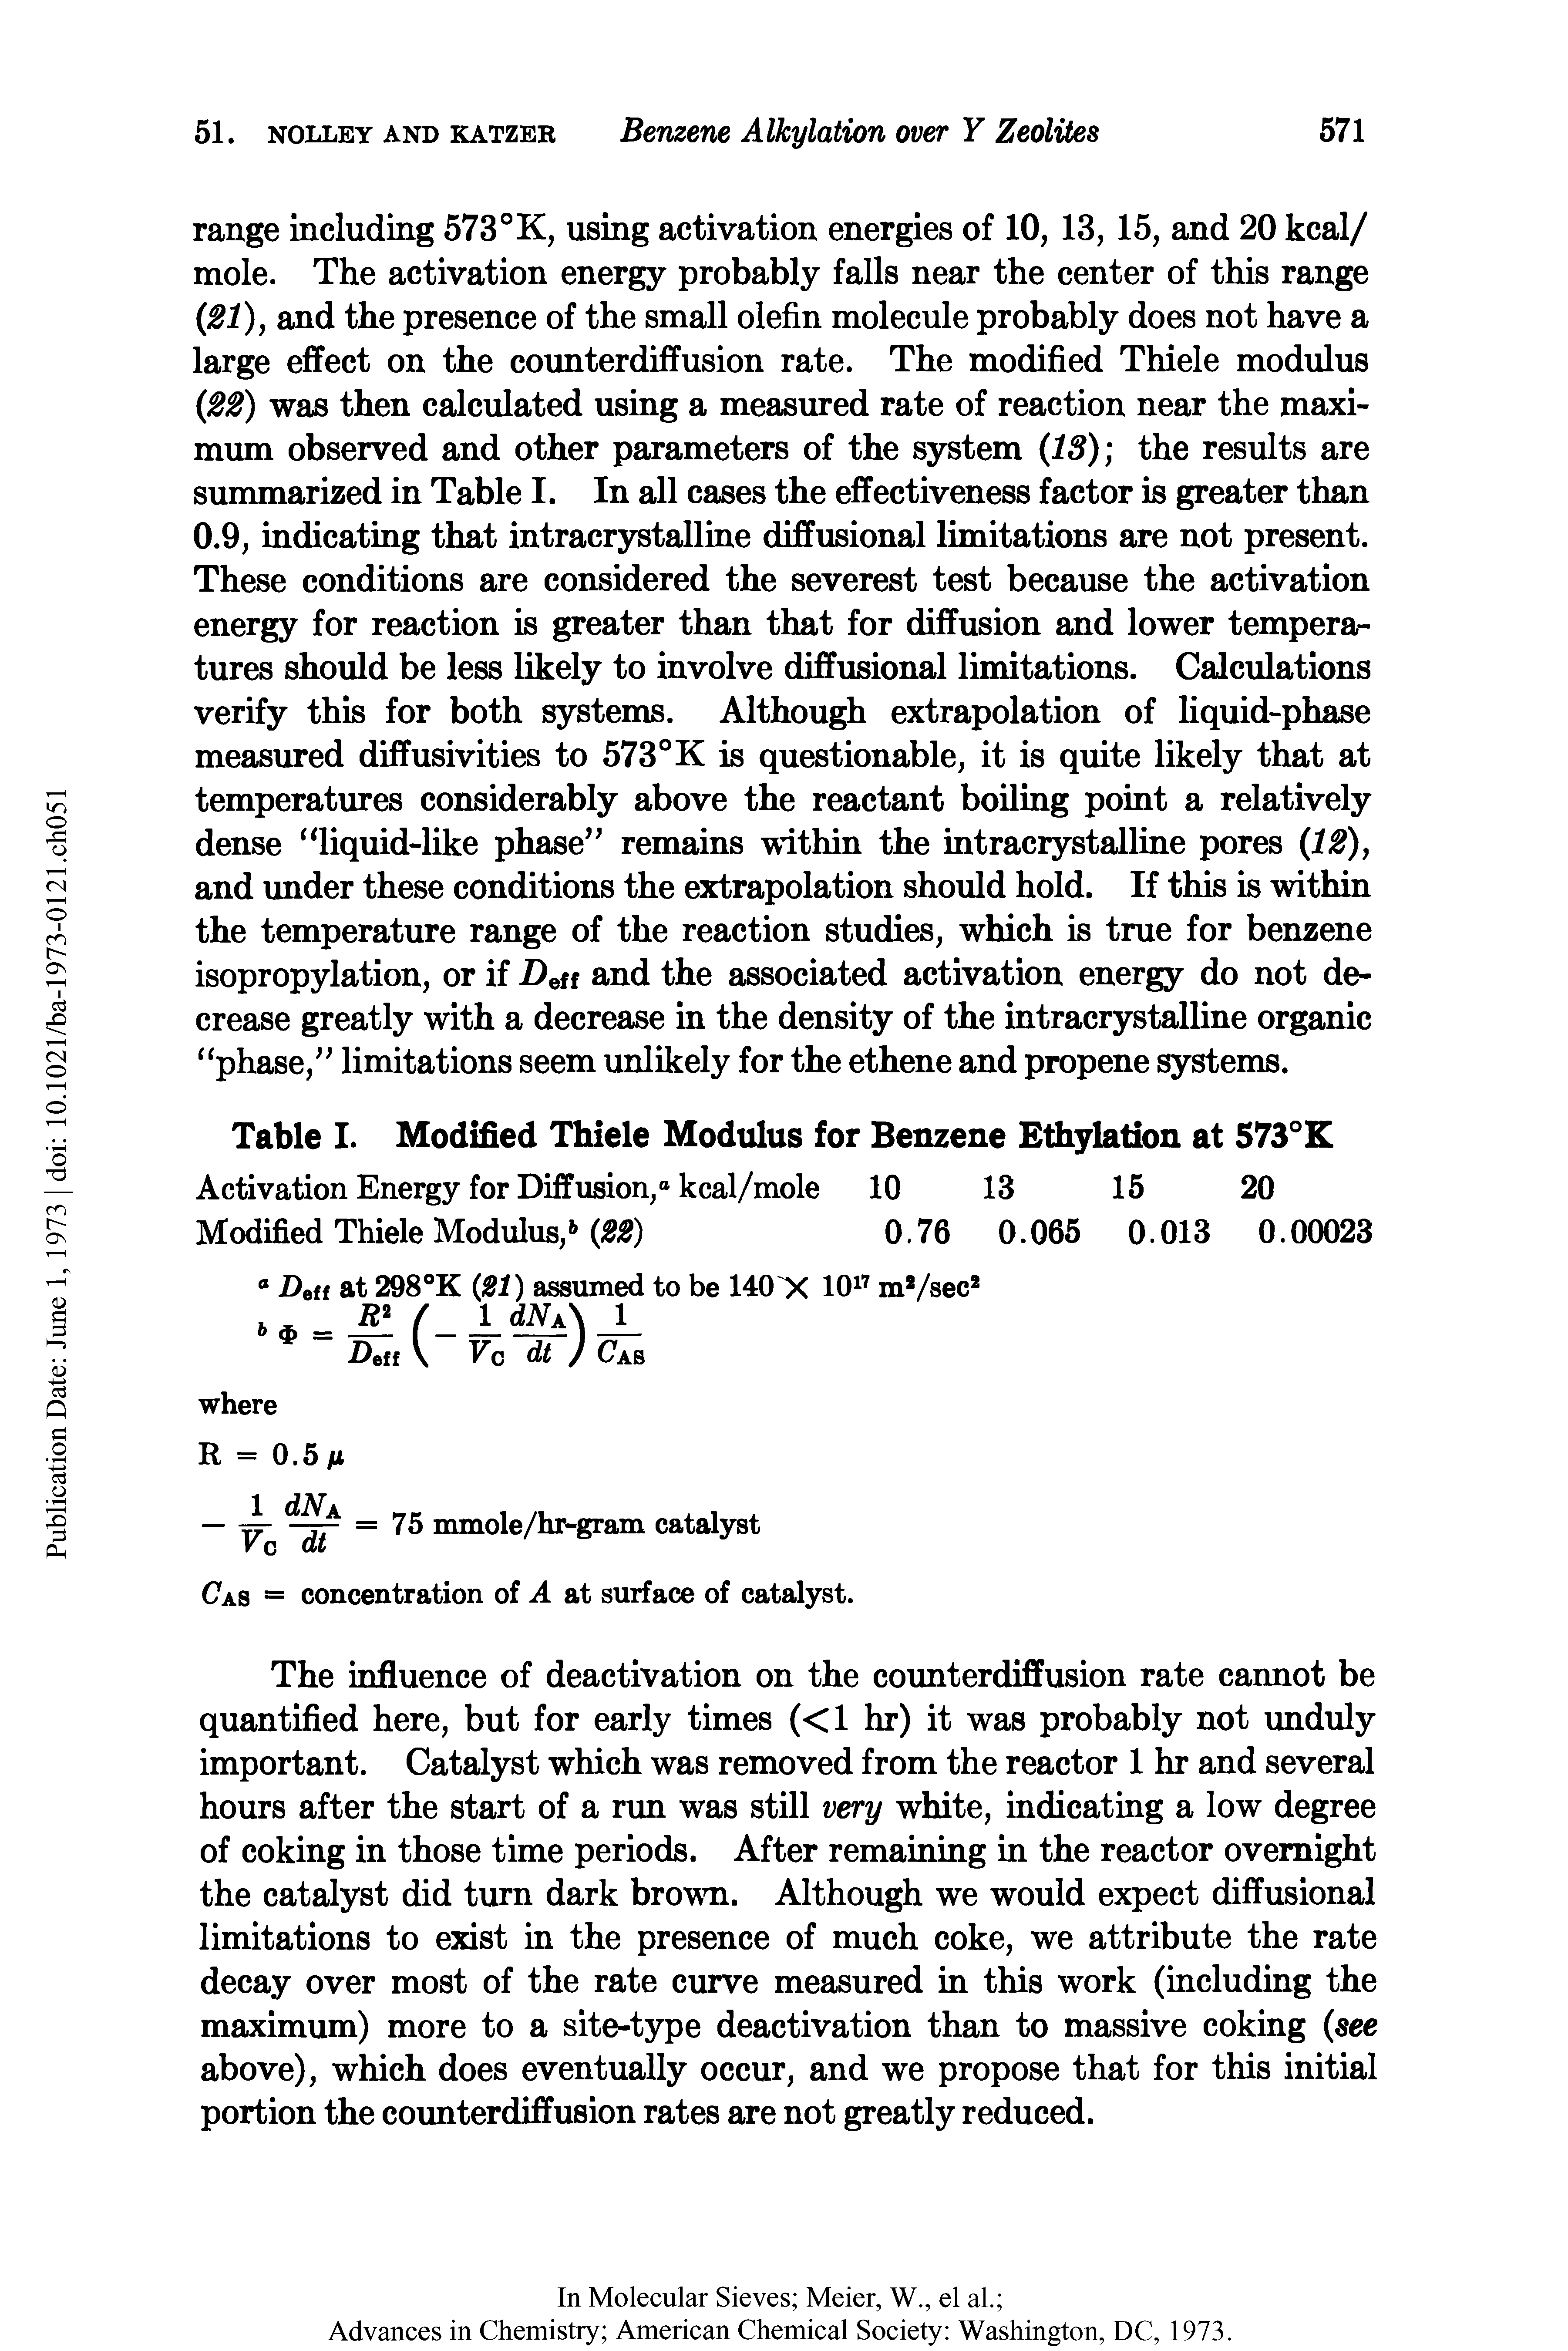 Table I. Modified Thiele Modulus for Benzene Ethylation at 573°K...